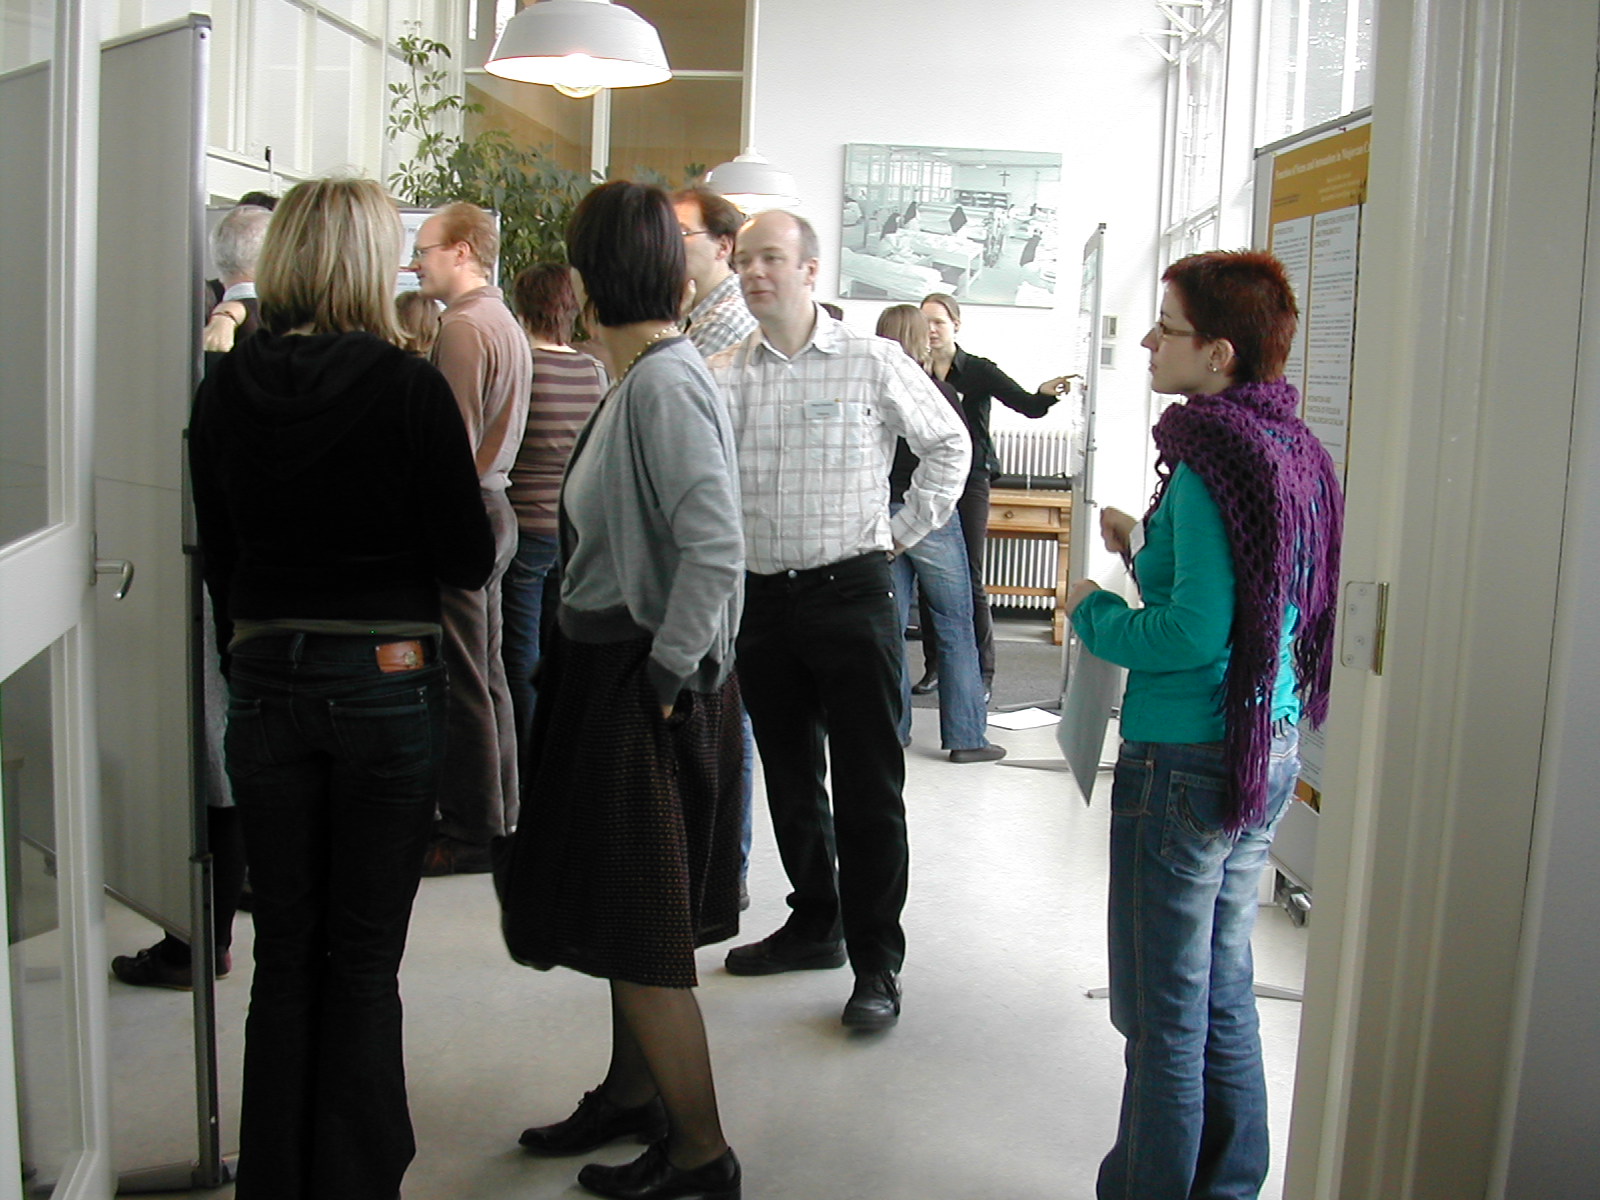 Soeterbeeck workshop, Holland, 2008